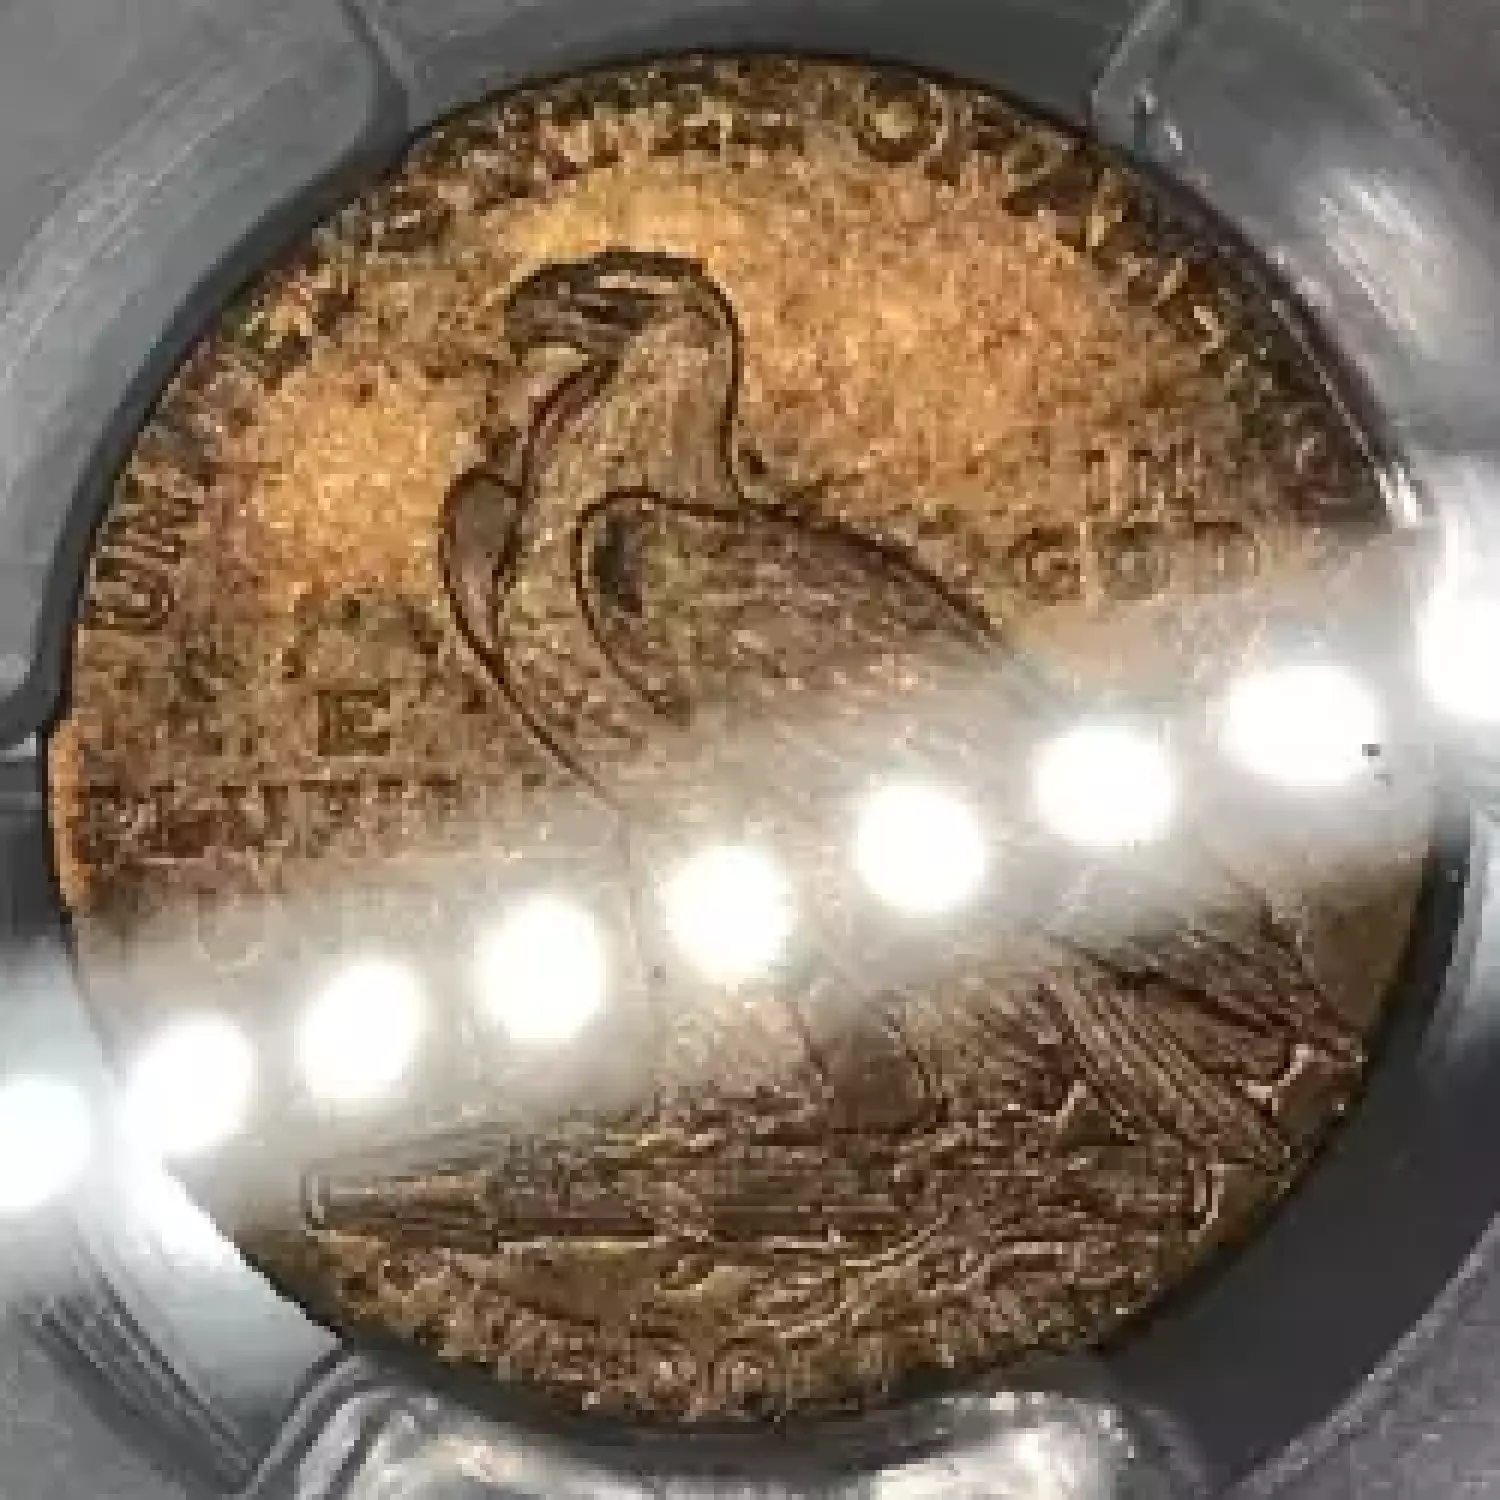 1913 $5 (4)